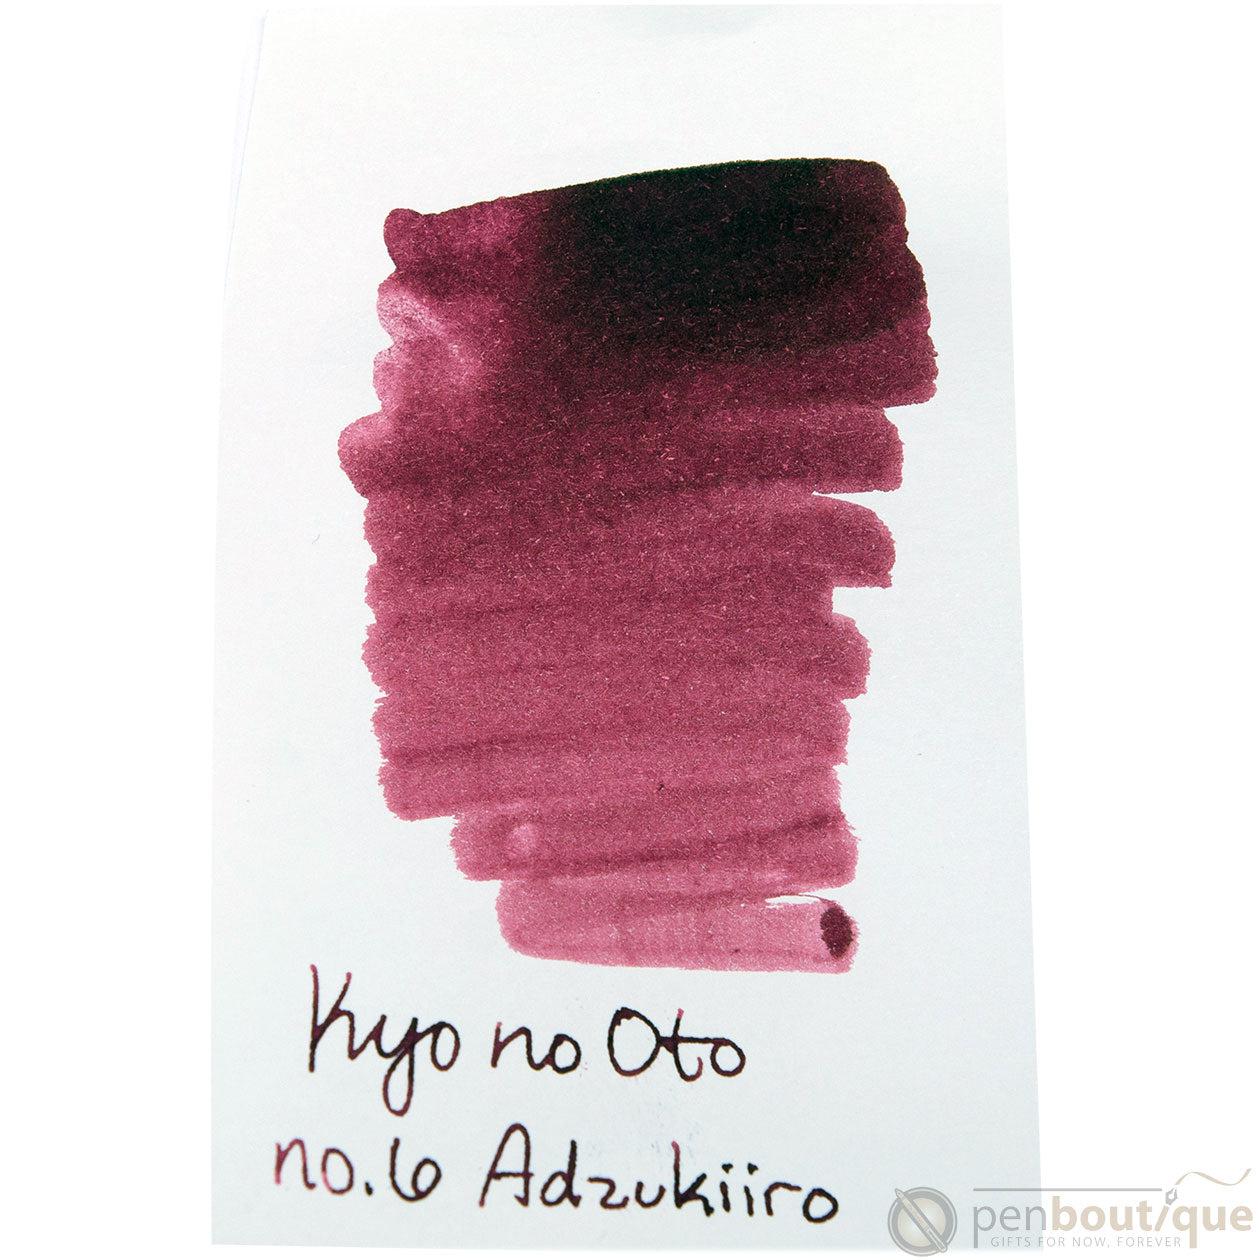 Kyoto Ink Bottle - Kyo no Oto - Adzukiiro-Pen Boutique Ltd